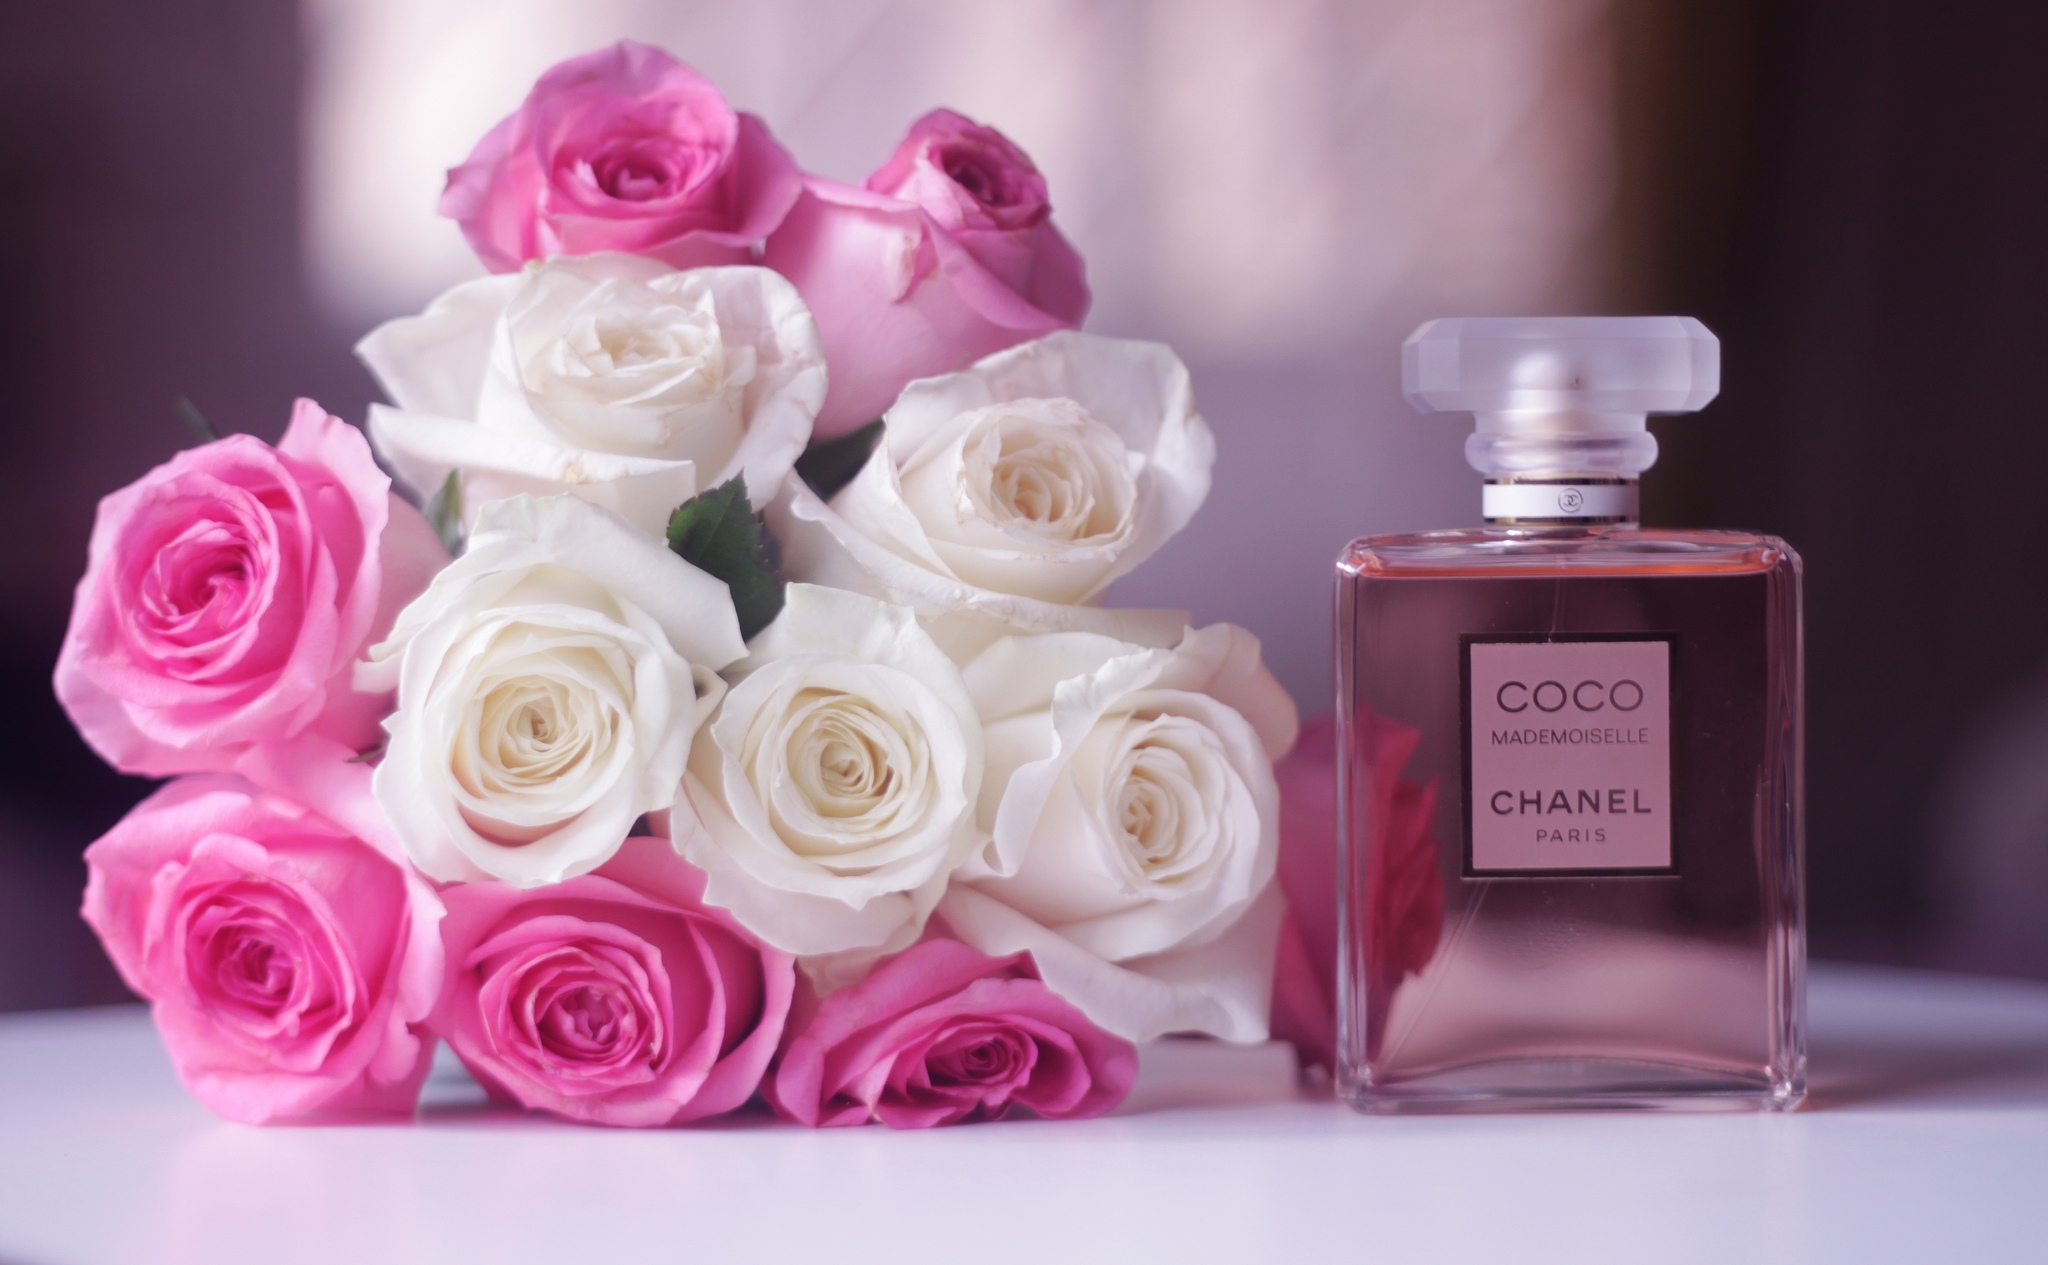 She likes roses. Chanel Parfum Rose. Коко Шанель духи розовые. Шанель пионы Парфюм. Цветок Коко Шанель.